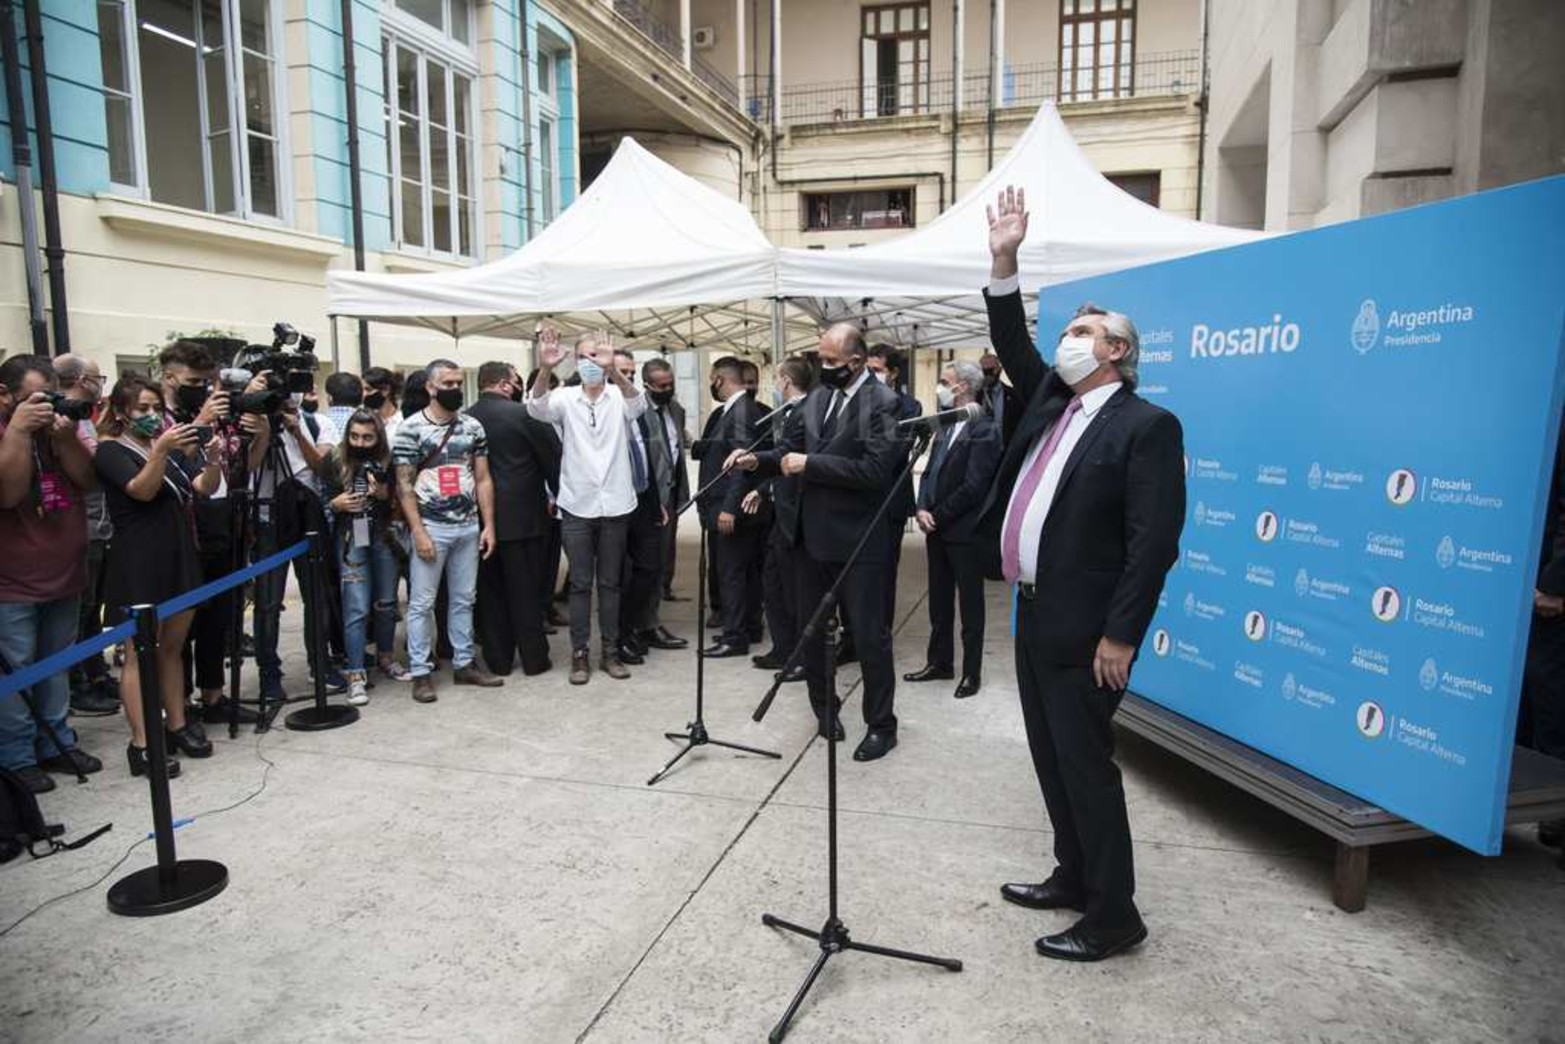 El Presidente Alberto Fernandez visitó en el día de hoy, la ciudad de Rosario, anunciando nuevas inversiones.